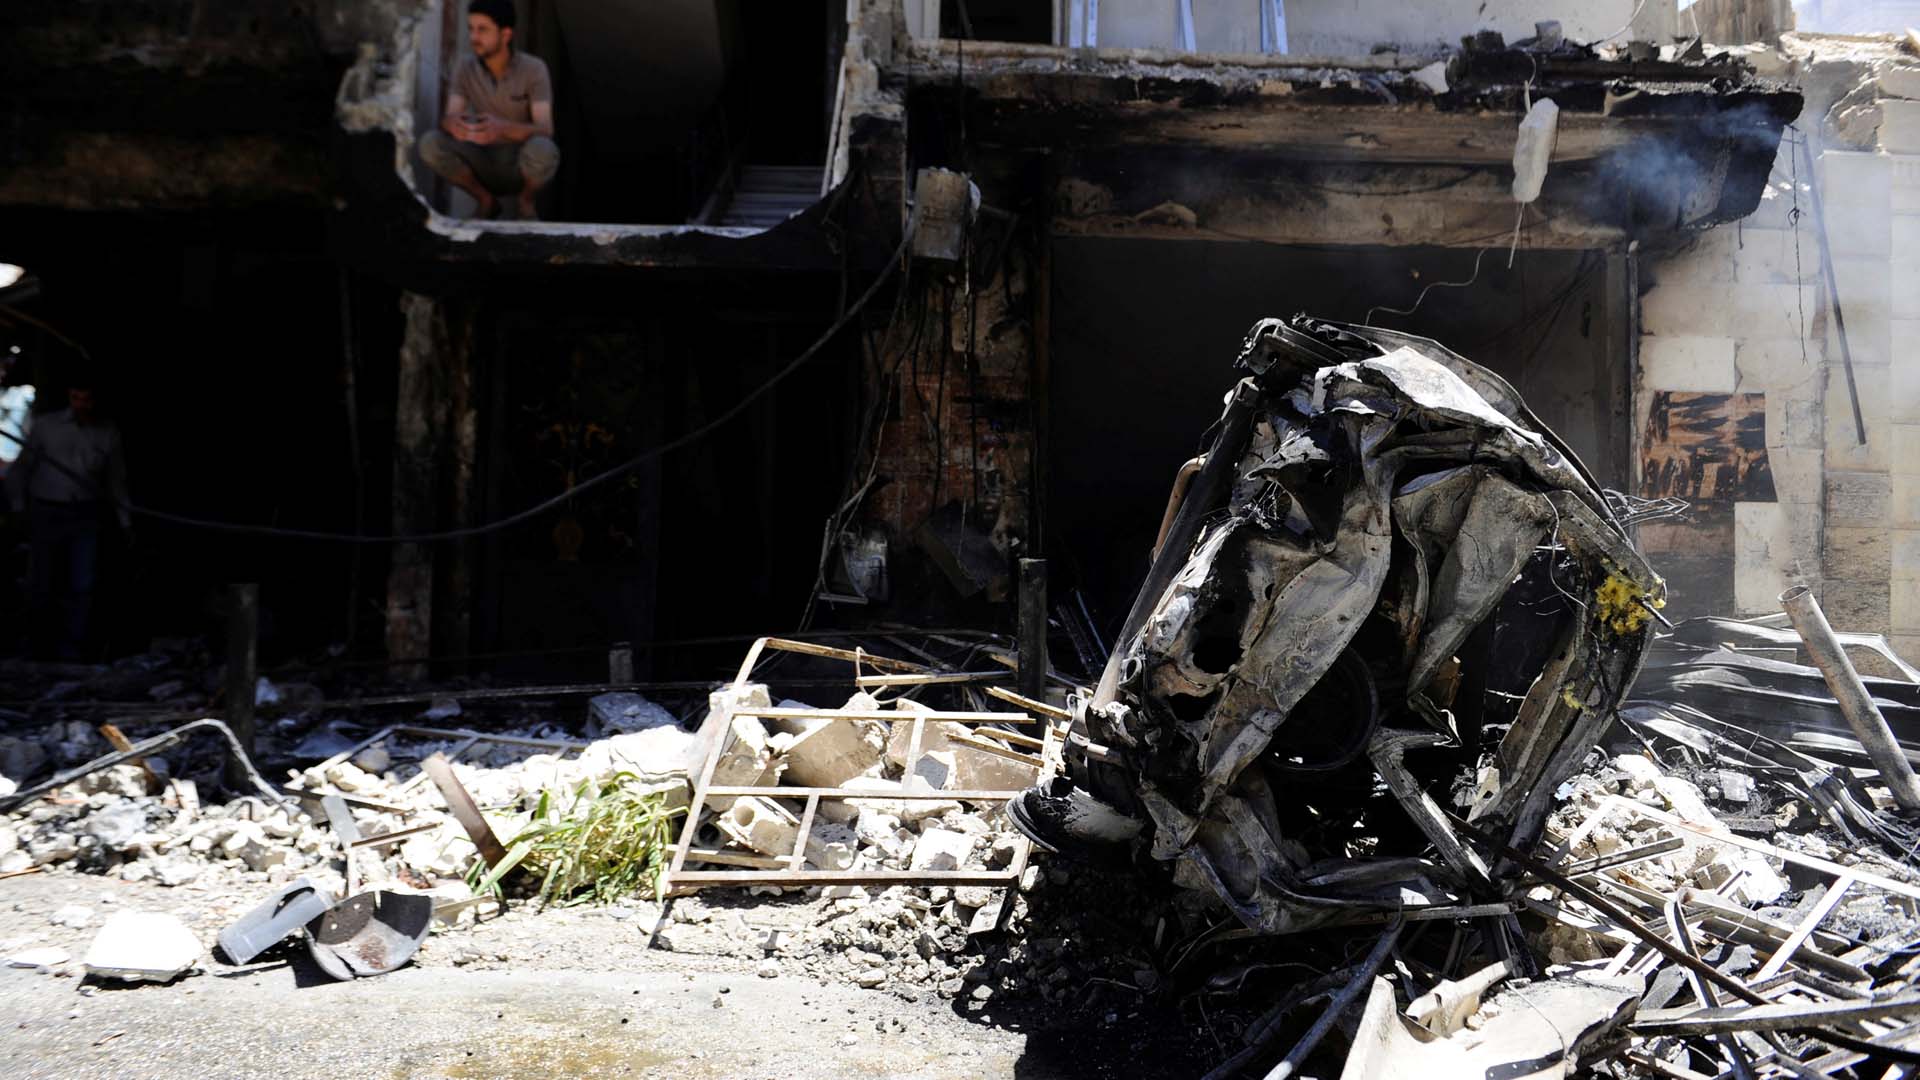 Ataques sincronizados fueron reivindicados por el Estado Islámico. Otras 30 personas permanecen heridas